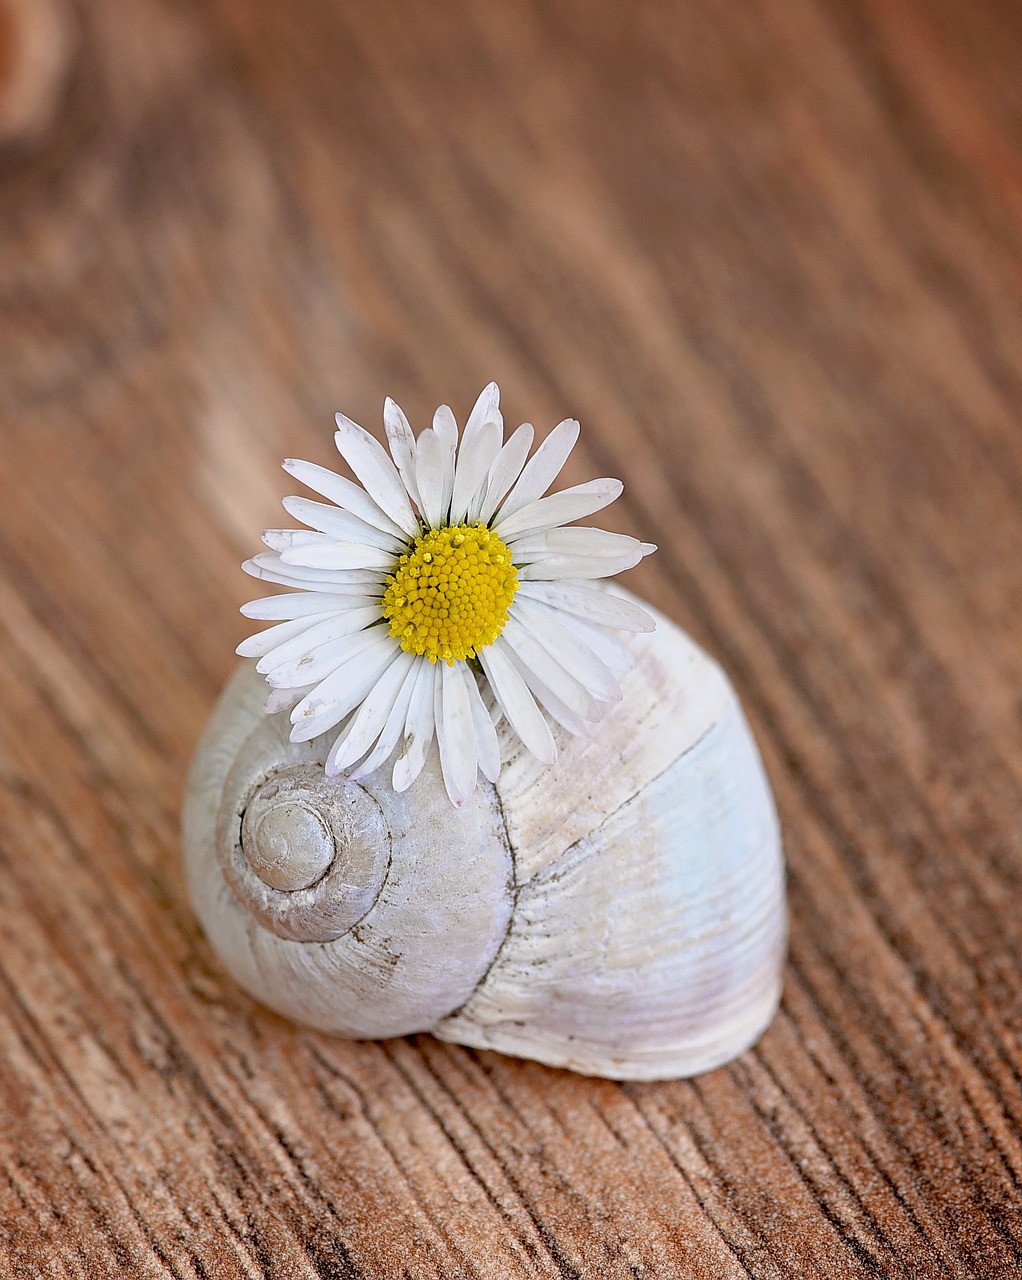 shell empty snail shell daisy free photo